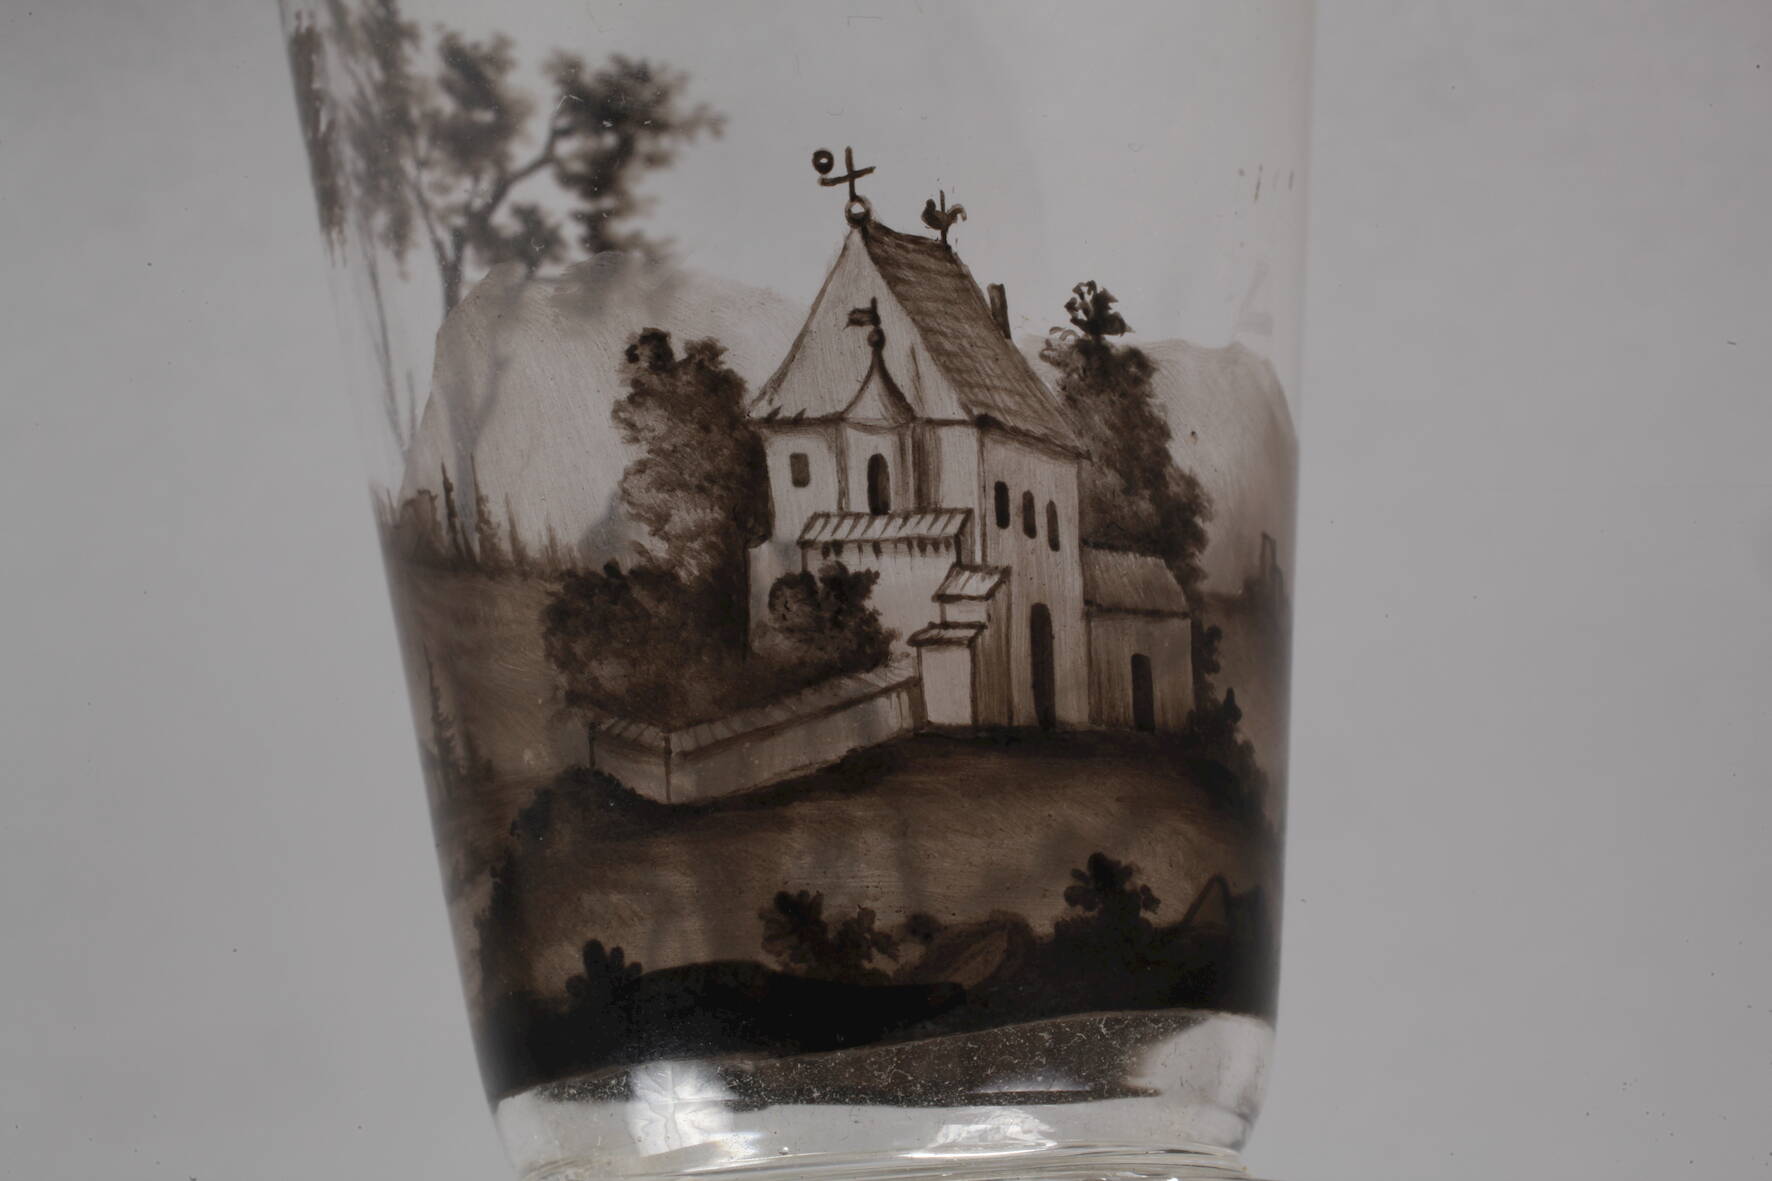 Lobmeyr Wien Becherglas Schwarzlotmalerei2. Hälfte 19. Jh., weiße Pinselsignatur, farbloses Glas, - Image 3 of 5